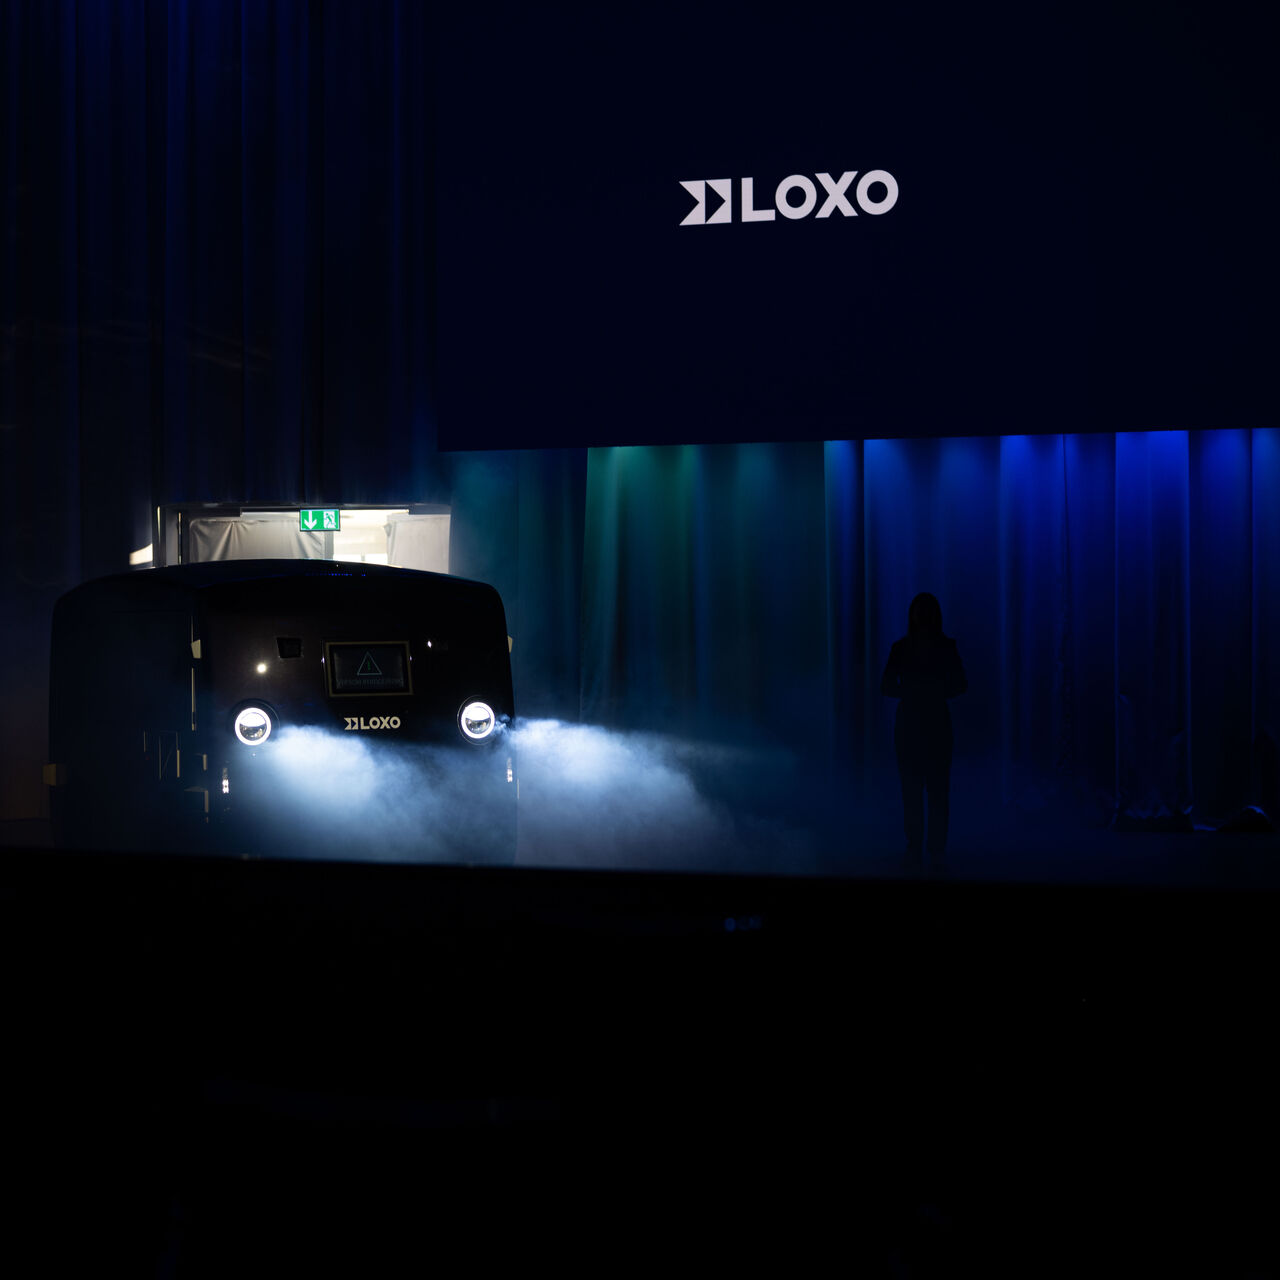 LOXO: আলফা হল একটি স্ব-চালিত ভ্যান যা সম্পূর্ণরূপে সুইজারল্যান্ডে তৈরি এবং 6 ডিসেম্বর 2022 তারিখে বার্নের কুরসালে স্টার্ট-আপ LOXO দ্বারা একটি প্রেস কনফারেন্সের সময় উপস্থাপন করা হয়েছিল